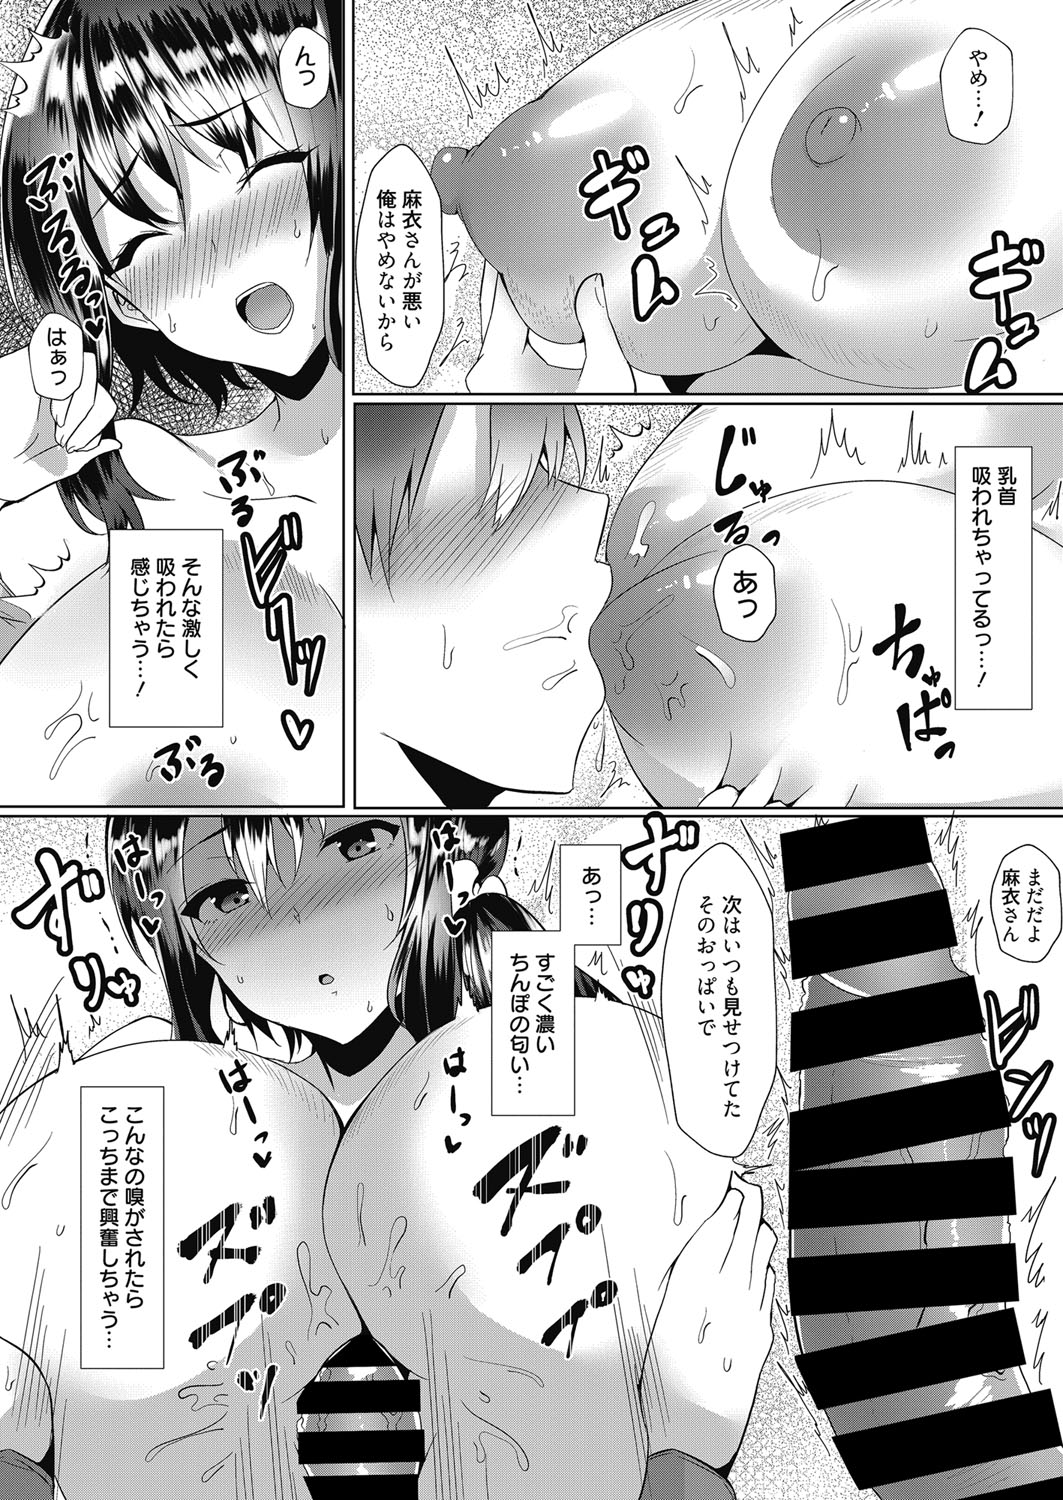 Web Manga Bangaichi Vol. 17 web 漫画ばんがいち Vol.17